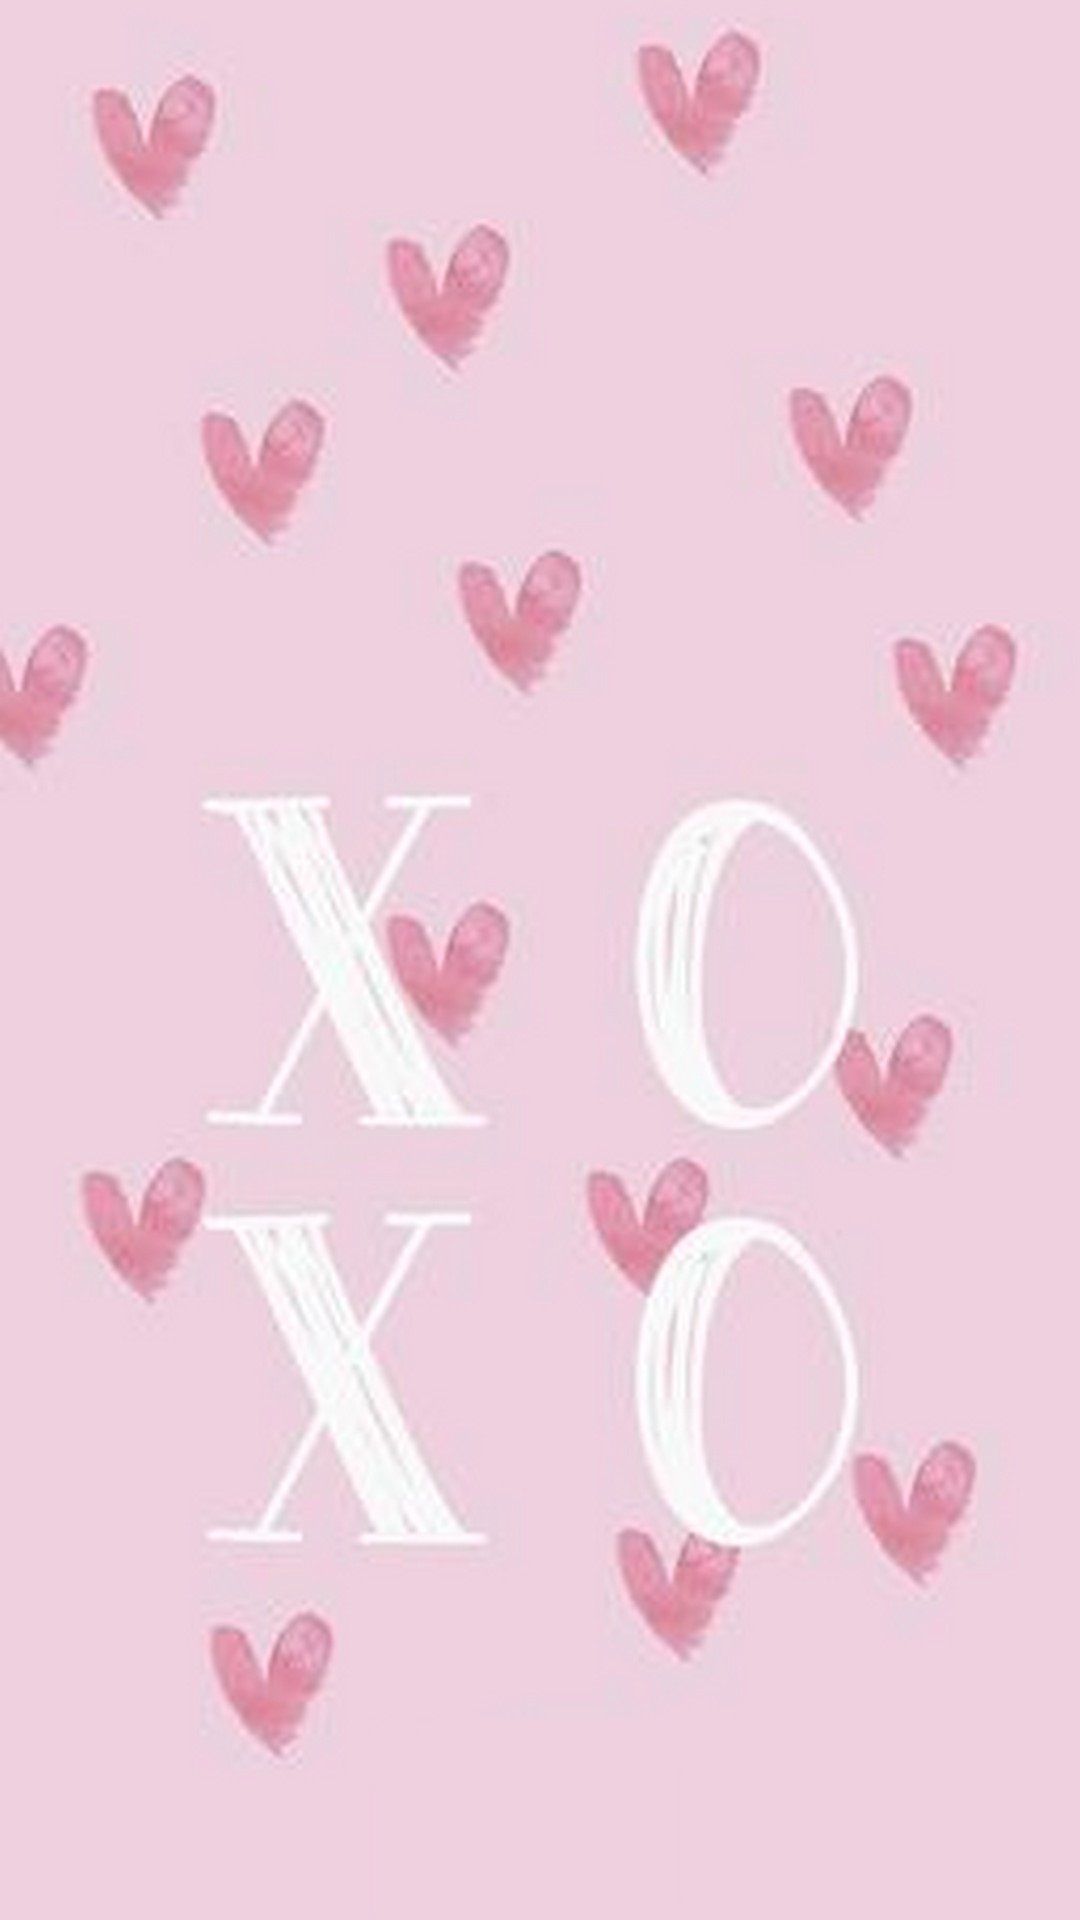 Valentines Day iphone wallpaper by SailorTrekkie92 on DeviantArt